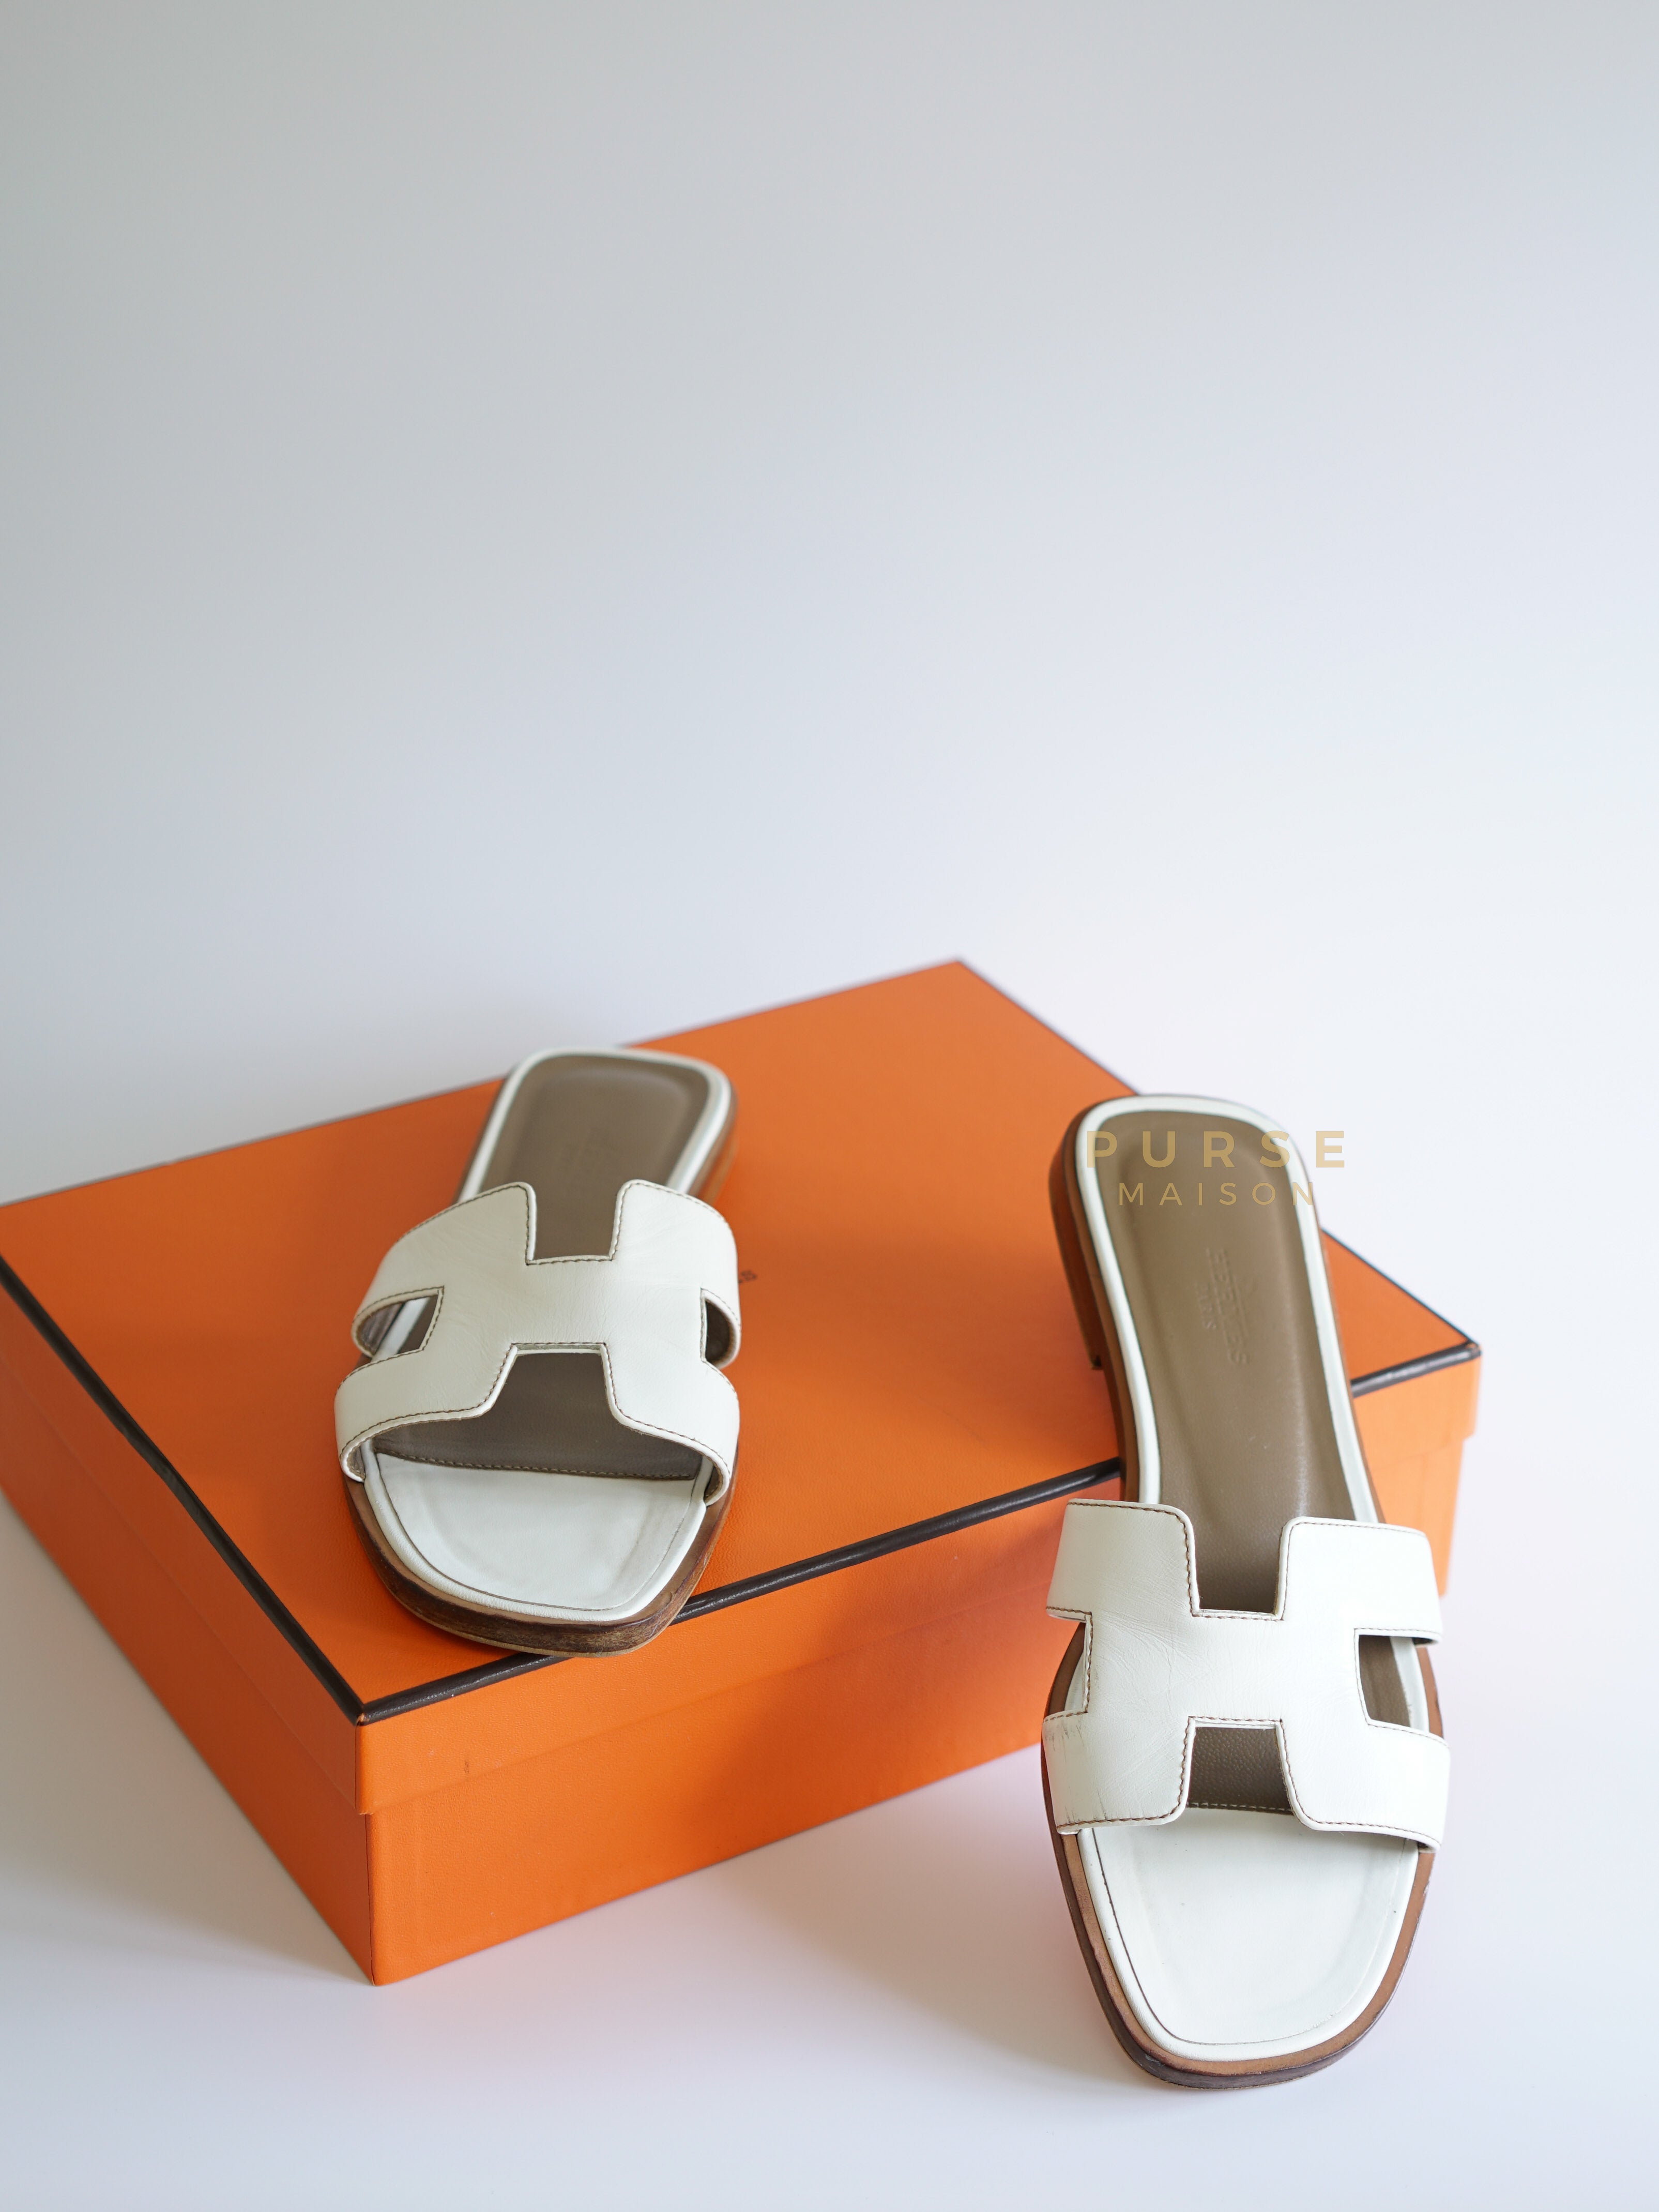 Oran White Sandals Size 37 EU (23.5cm) | Purse Maison Luxury Bags Shop